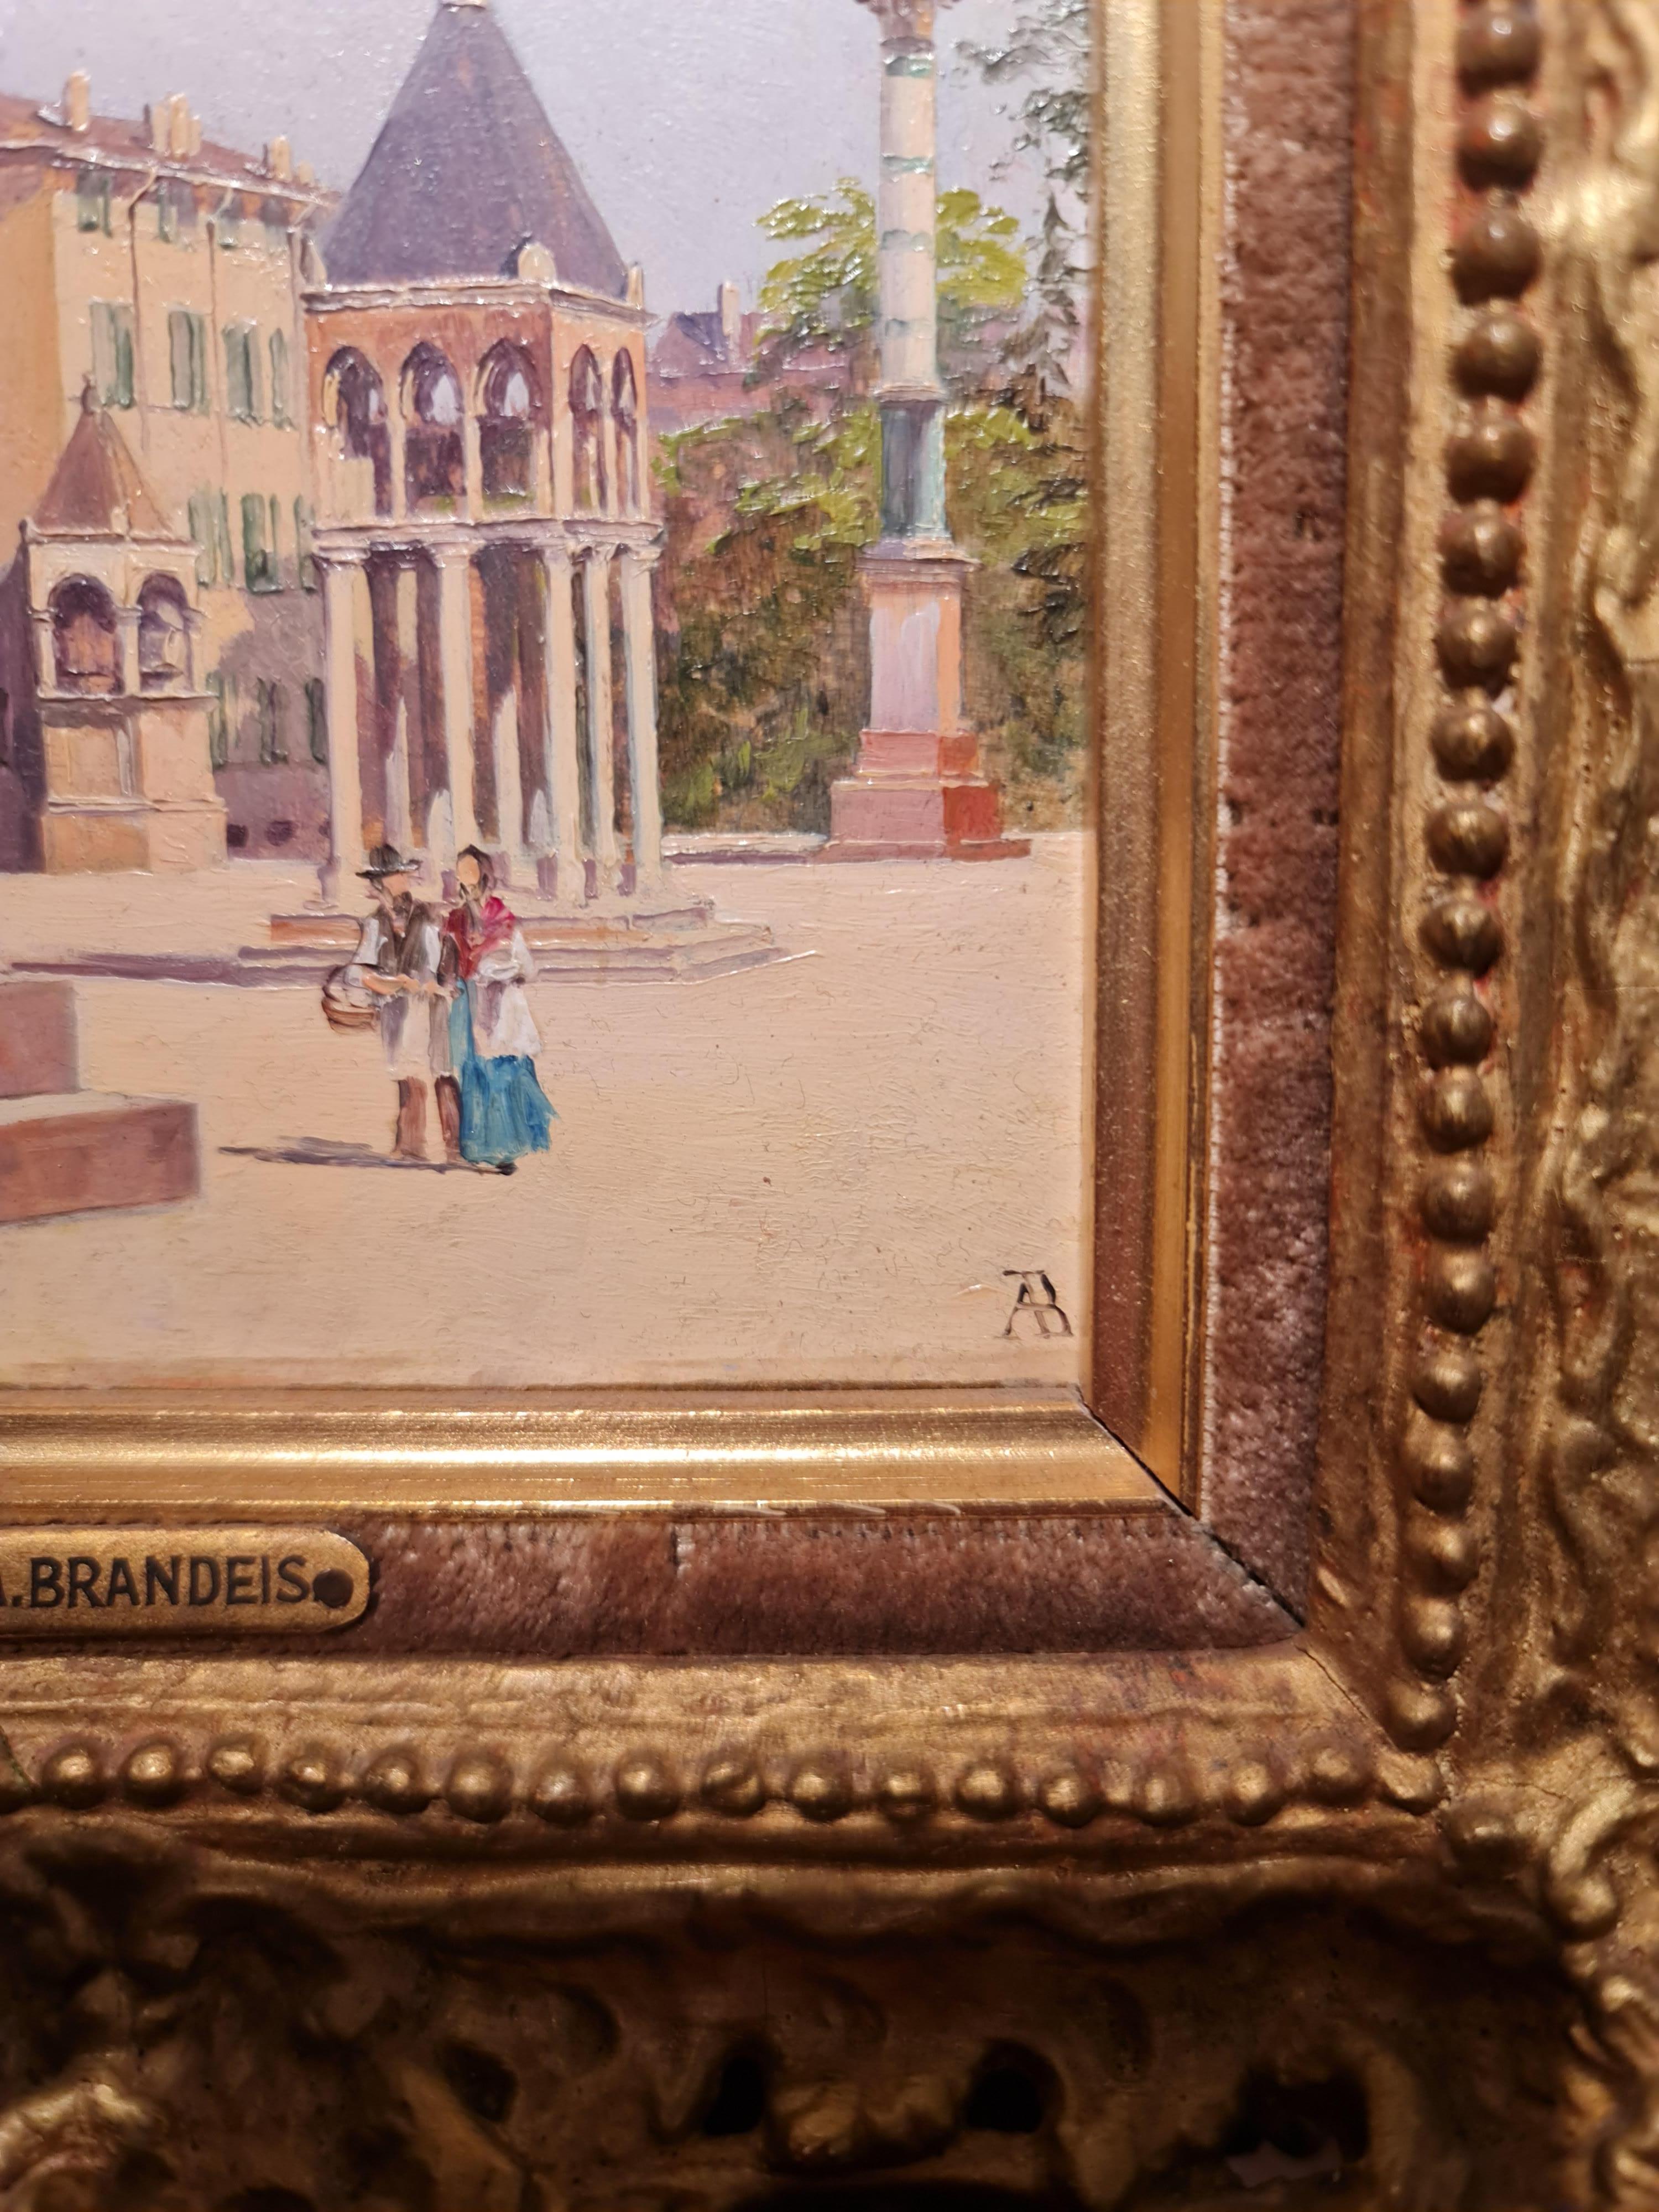 Vues de Venise (une paire)
par Antonietta Brandeis
Autrichien, 1848-1926

Huile sur carton
Taille du tableau : 9.5 x 5.25 pouces (chacun)
Dimensions du cadre : 13,5 x 9 (chacune)

Les deux tableaux portent un monogramme en bas à droite